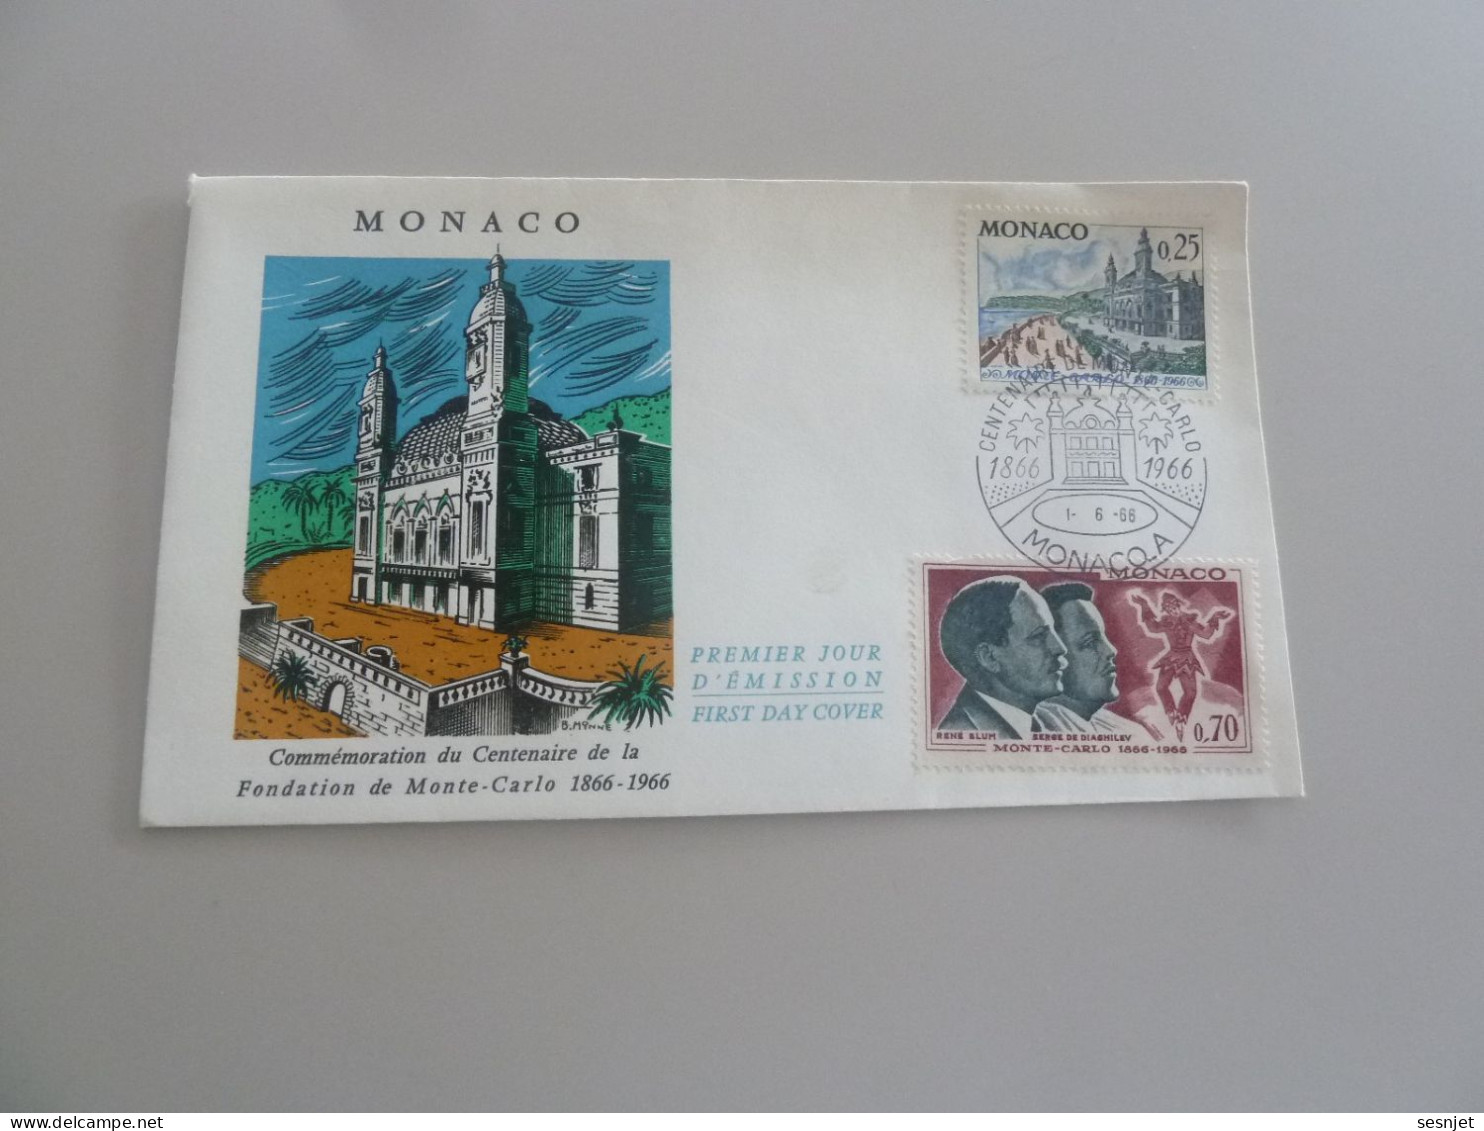 Monaco - Centenaire De La Fondation - 25c. Et 70c. - Yt 691 Et 695 - Enveloppe Premier Jour D'Emission - Année 1966 - - FDC